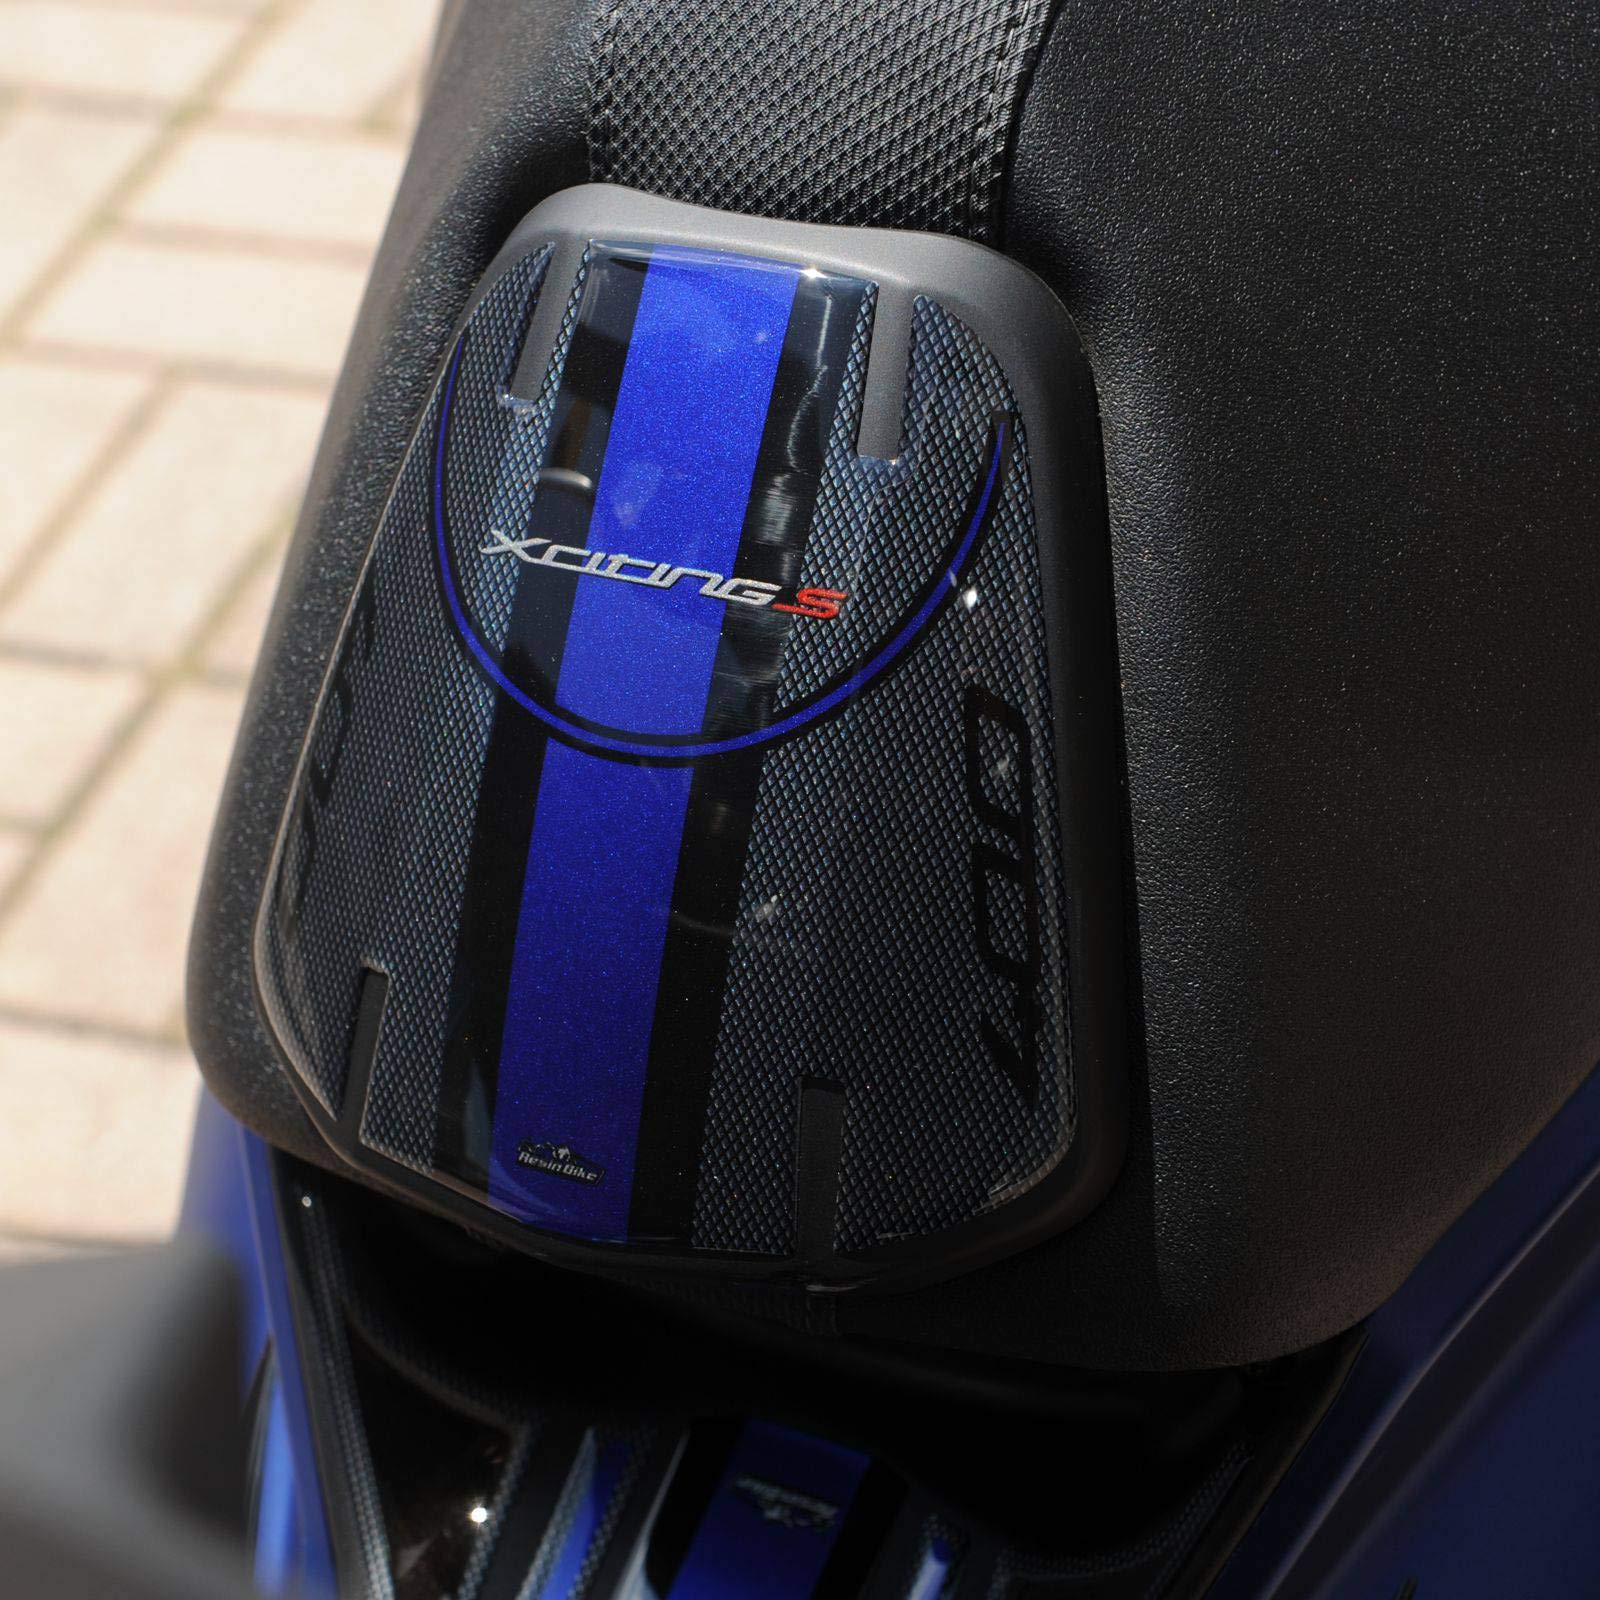 Resin Bike Aufkleber für Motorrad Kompatibel mit Kymco Xciting 400s 2019. Schutz für die Sattelplatte vor Stößen und Kratzern. 3D-Harzklebstoff - Stickers - Made in Italy von Resin Bike